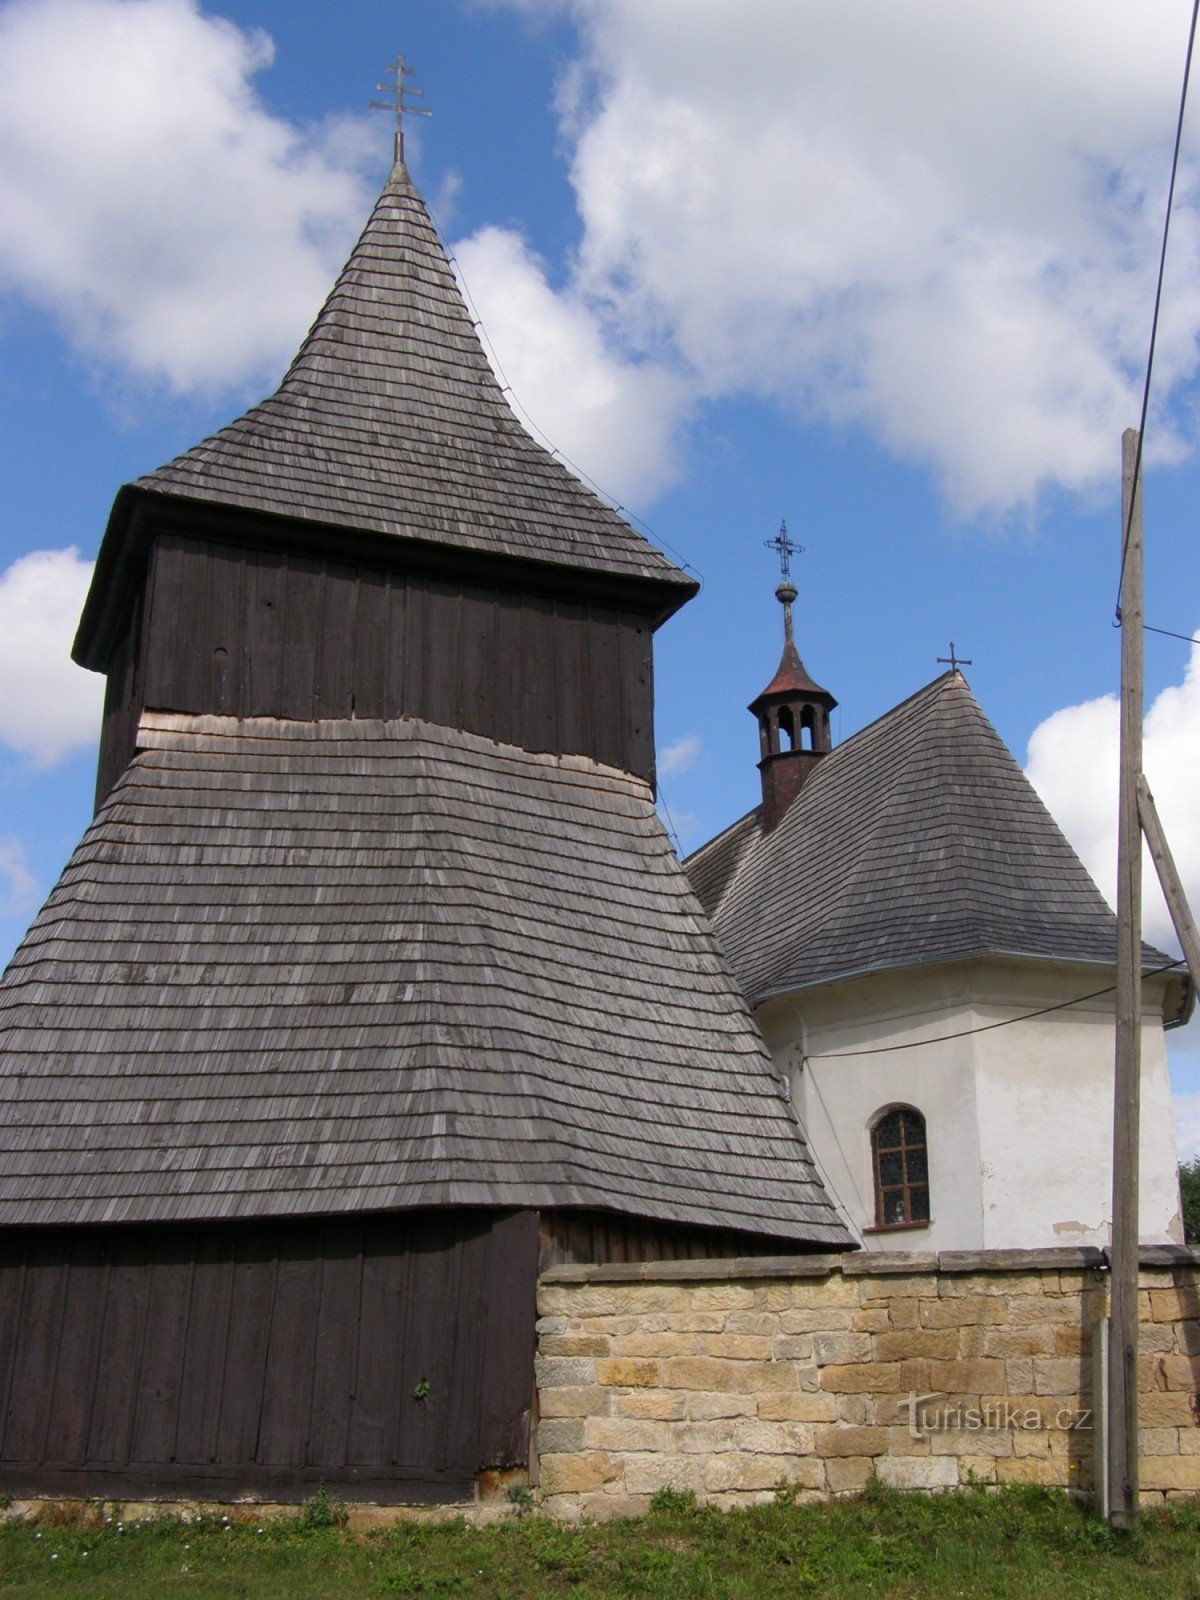 Vysočany - Szent István fatemplom. Piacok egy fából készült harangláb